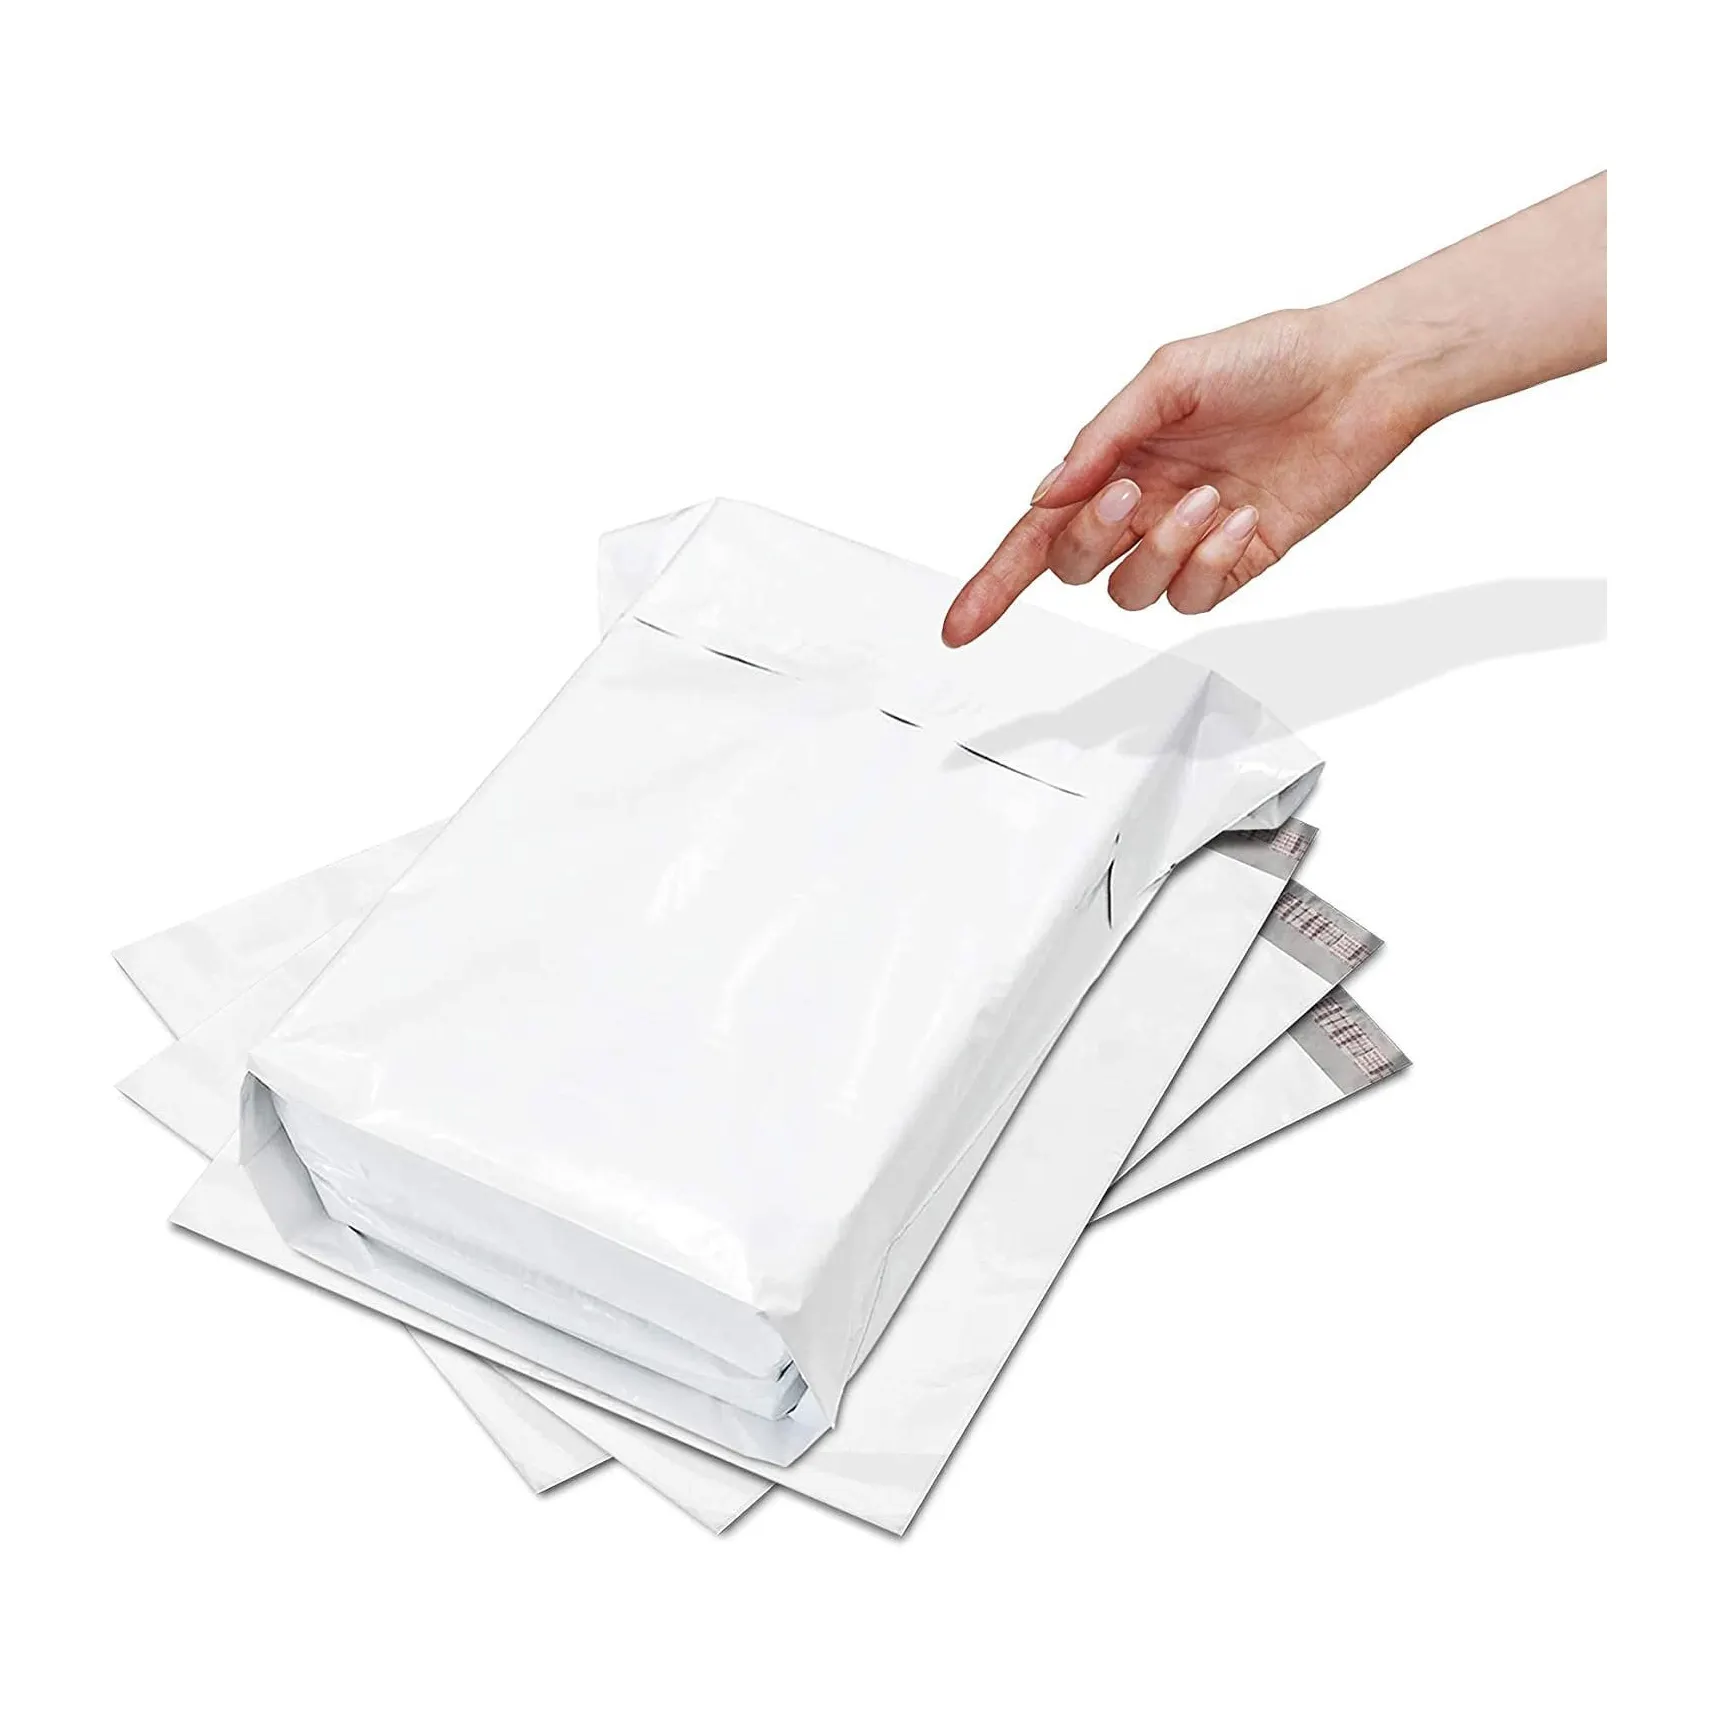 Design personalizzato eco friendly mailer riciclato Post bianco Poly mailer spedizione buste Mailing Bag colorato express borse vestiti